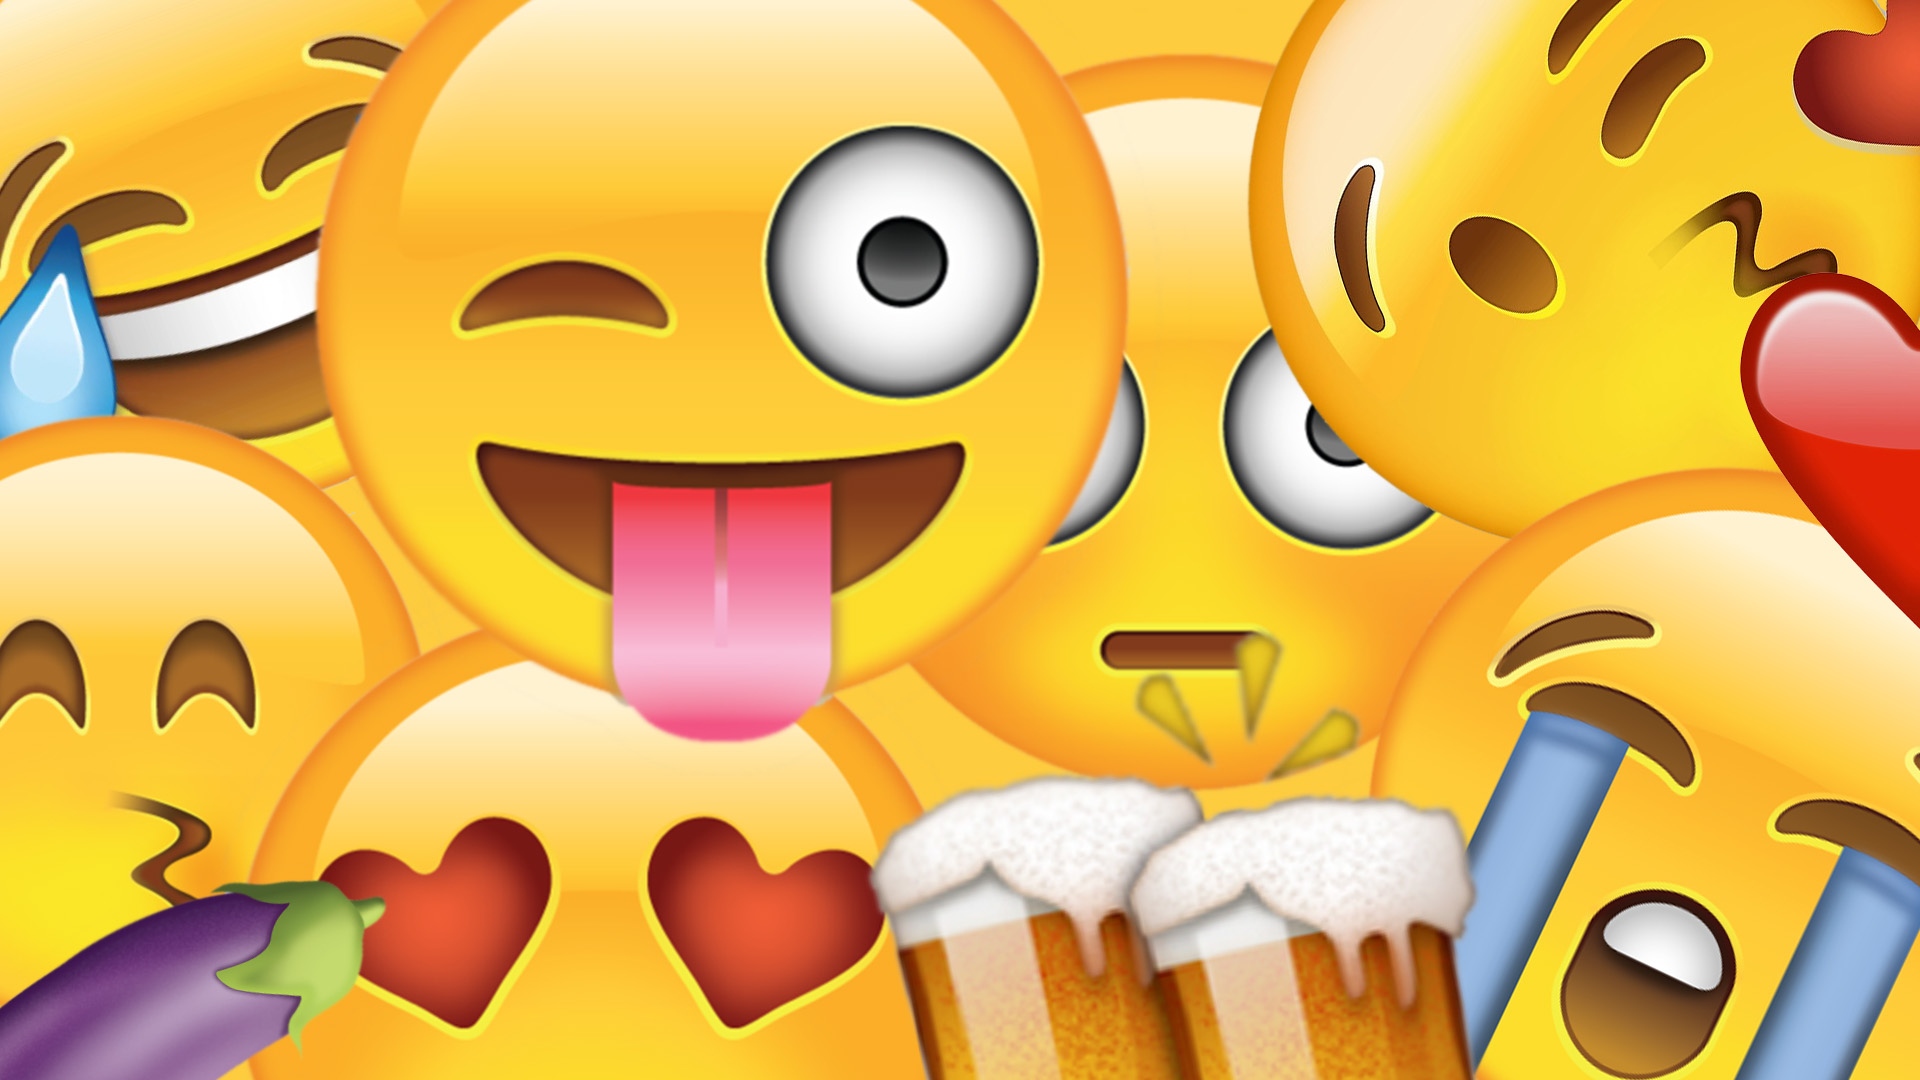 Smile Emoji - all emoji partten